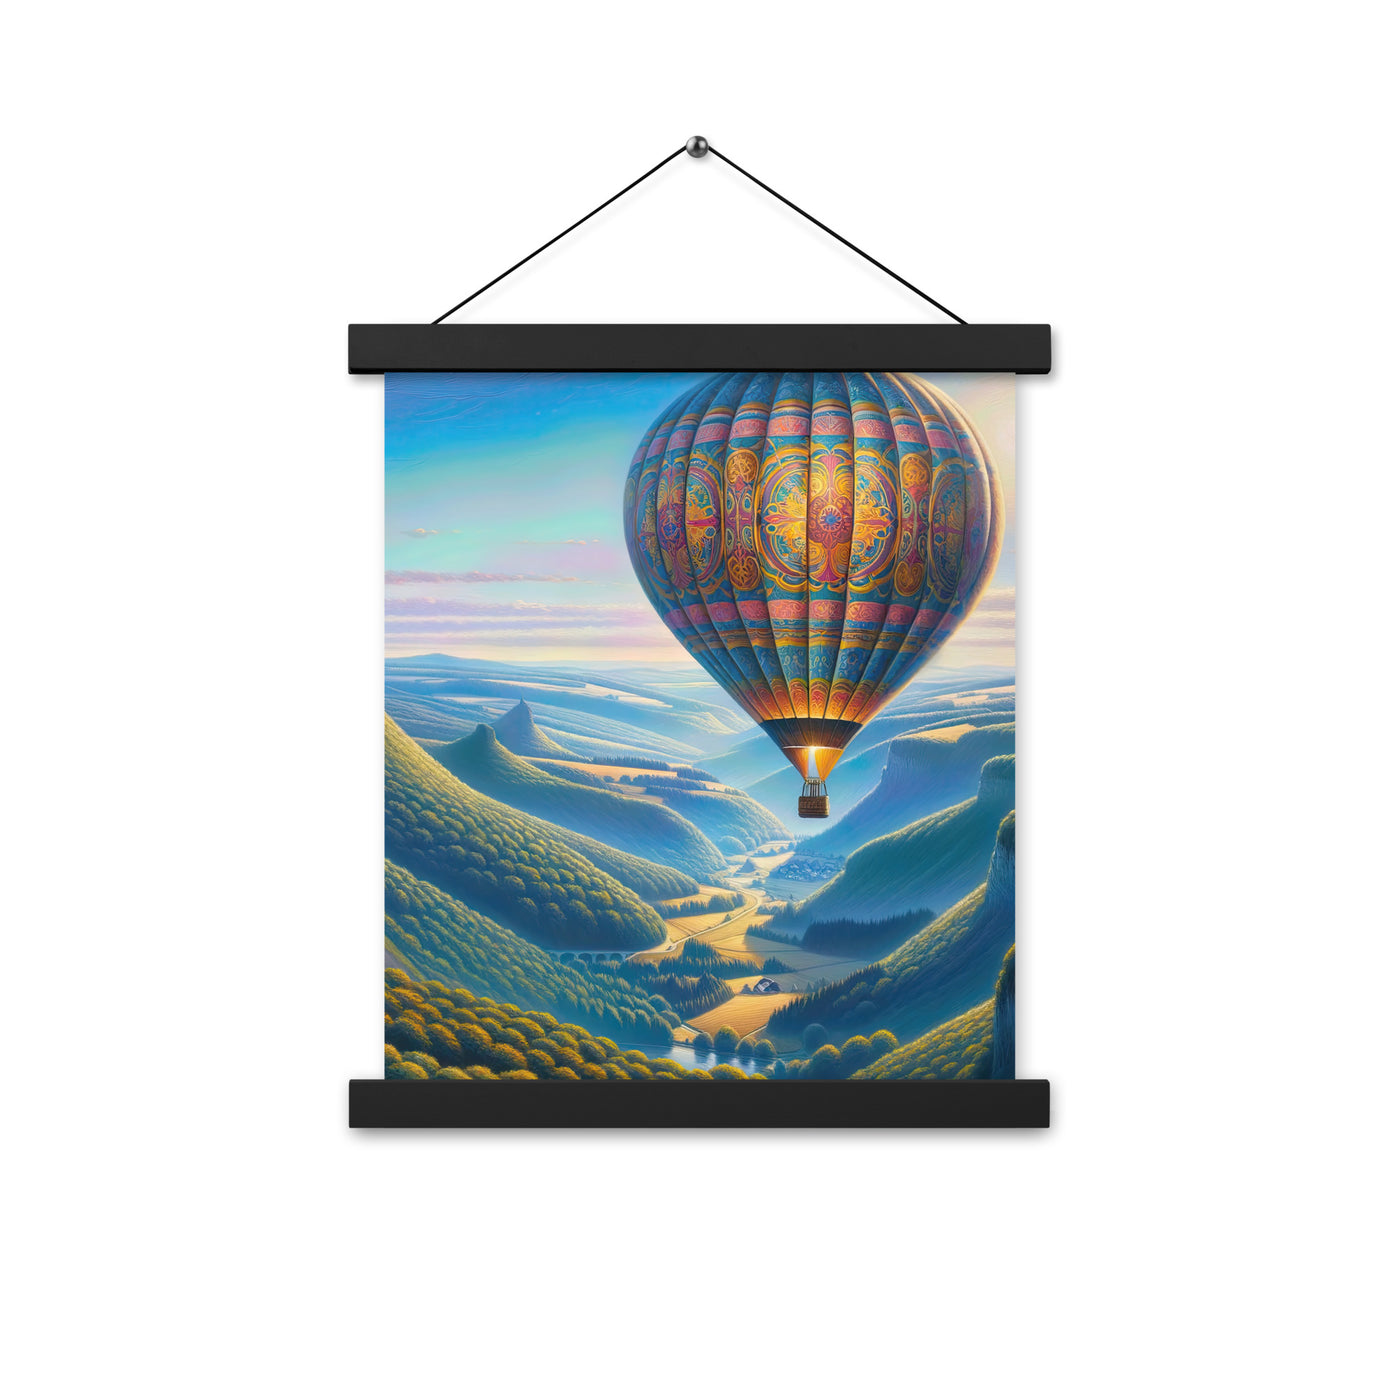 Ölgemälde einer ruhigen Szene mit verziertem Heißluftballon - Premium Poster mit Aufhängung berge xxx yyy zzz 27.9 x 35.6 cm